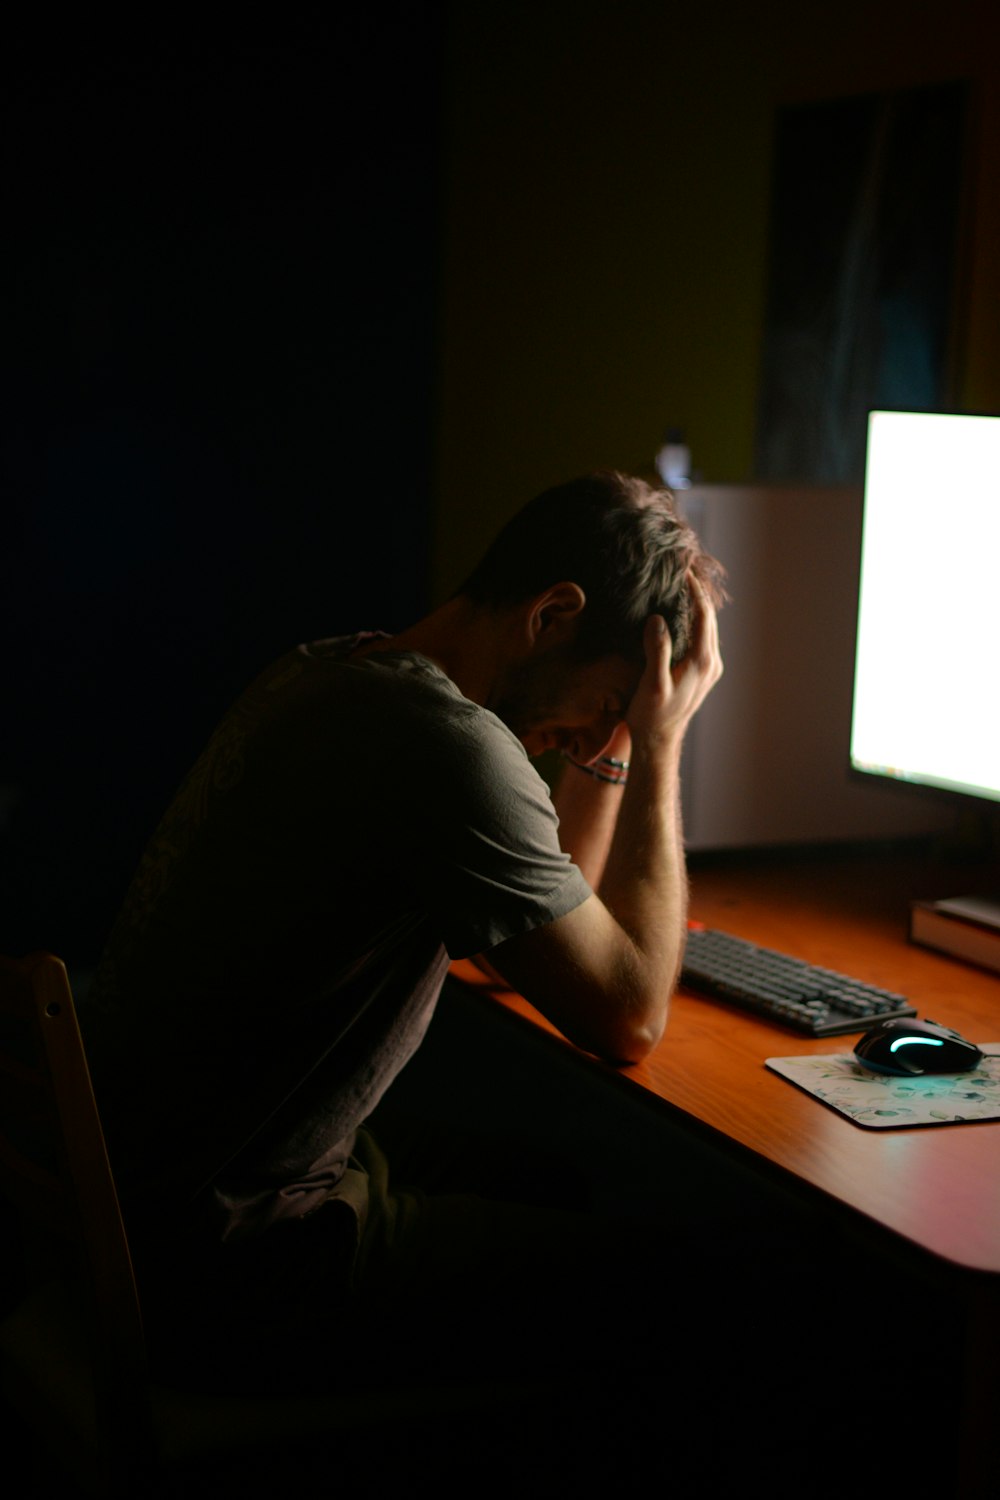 Ein Mann sitzt am Schreibtisch vor einem Computer